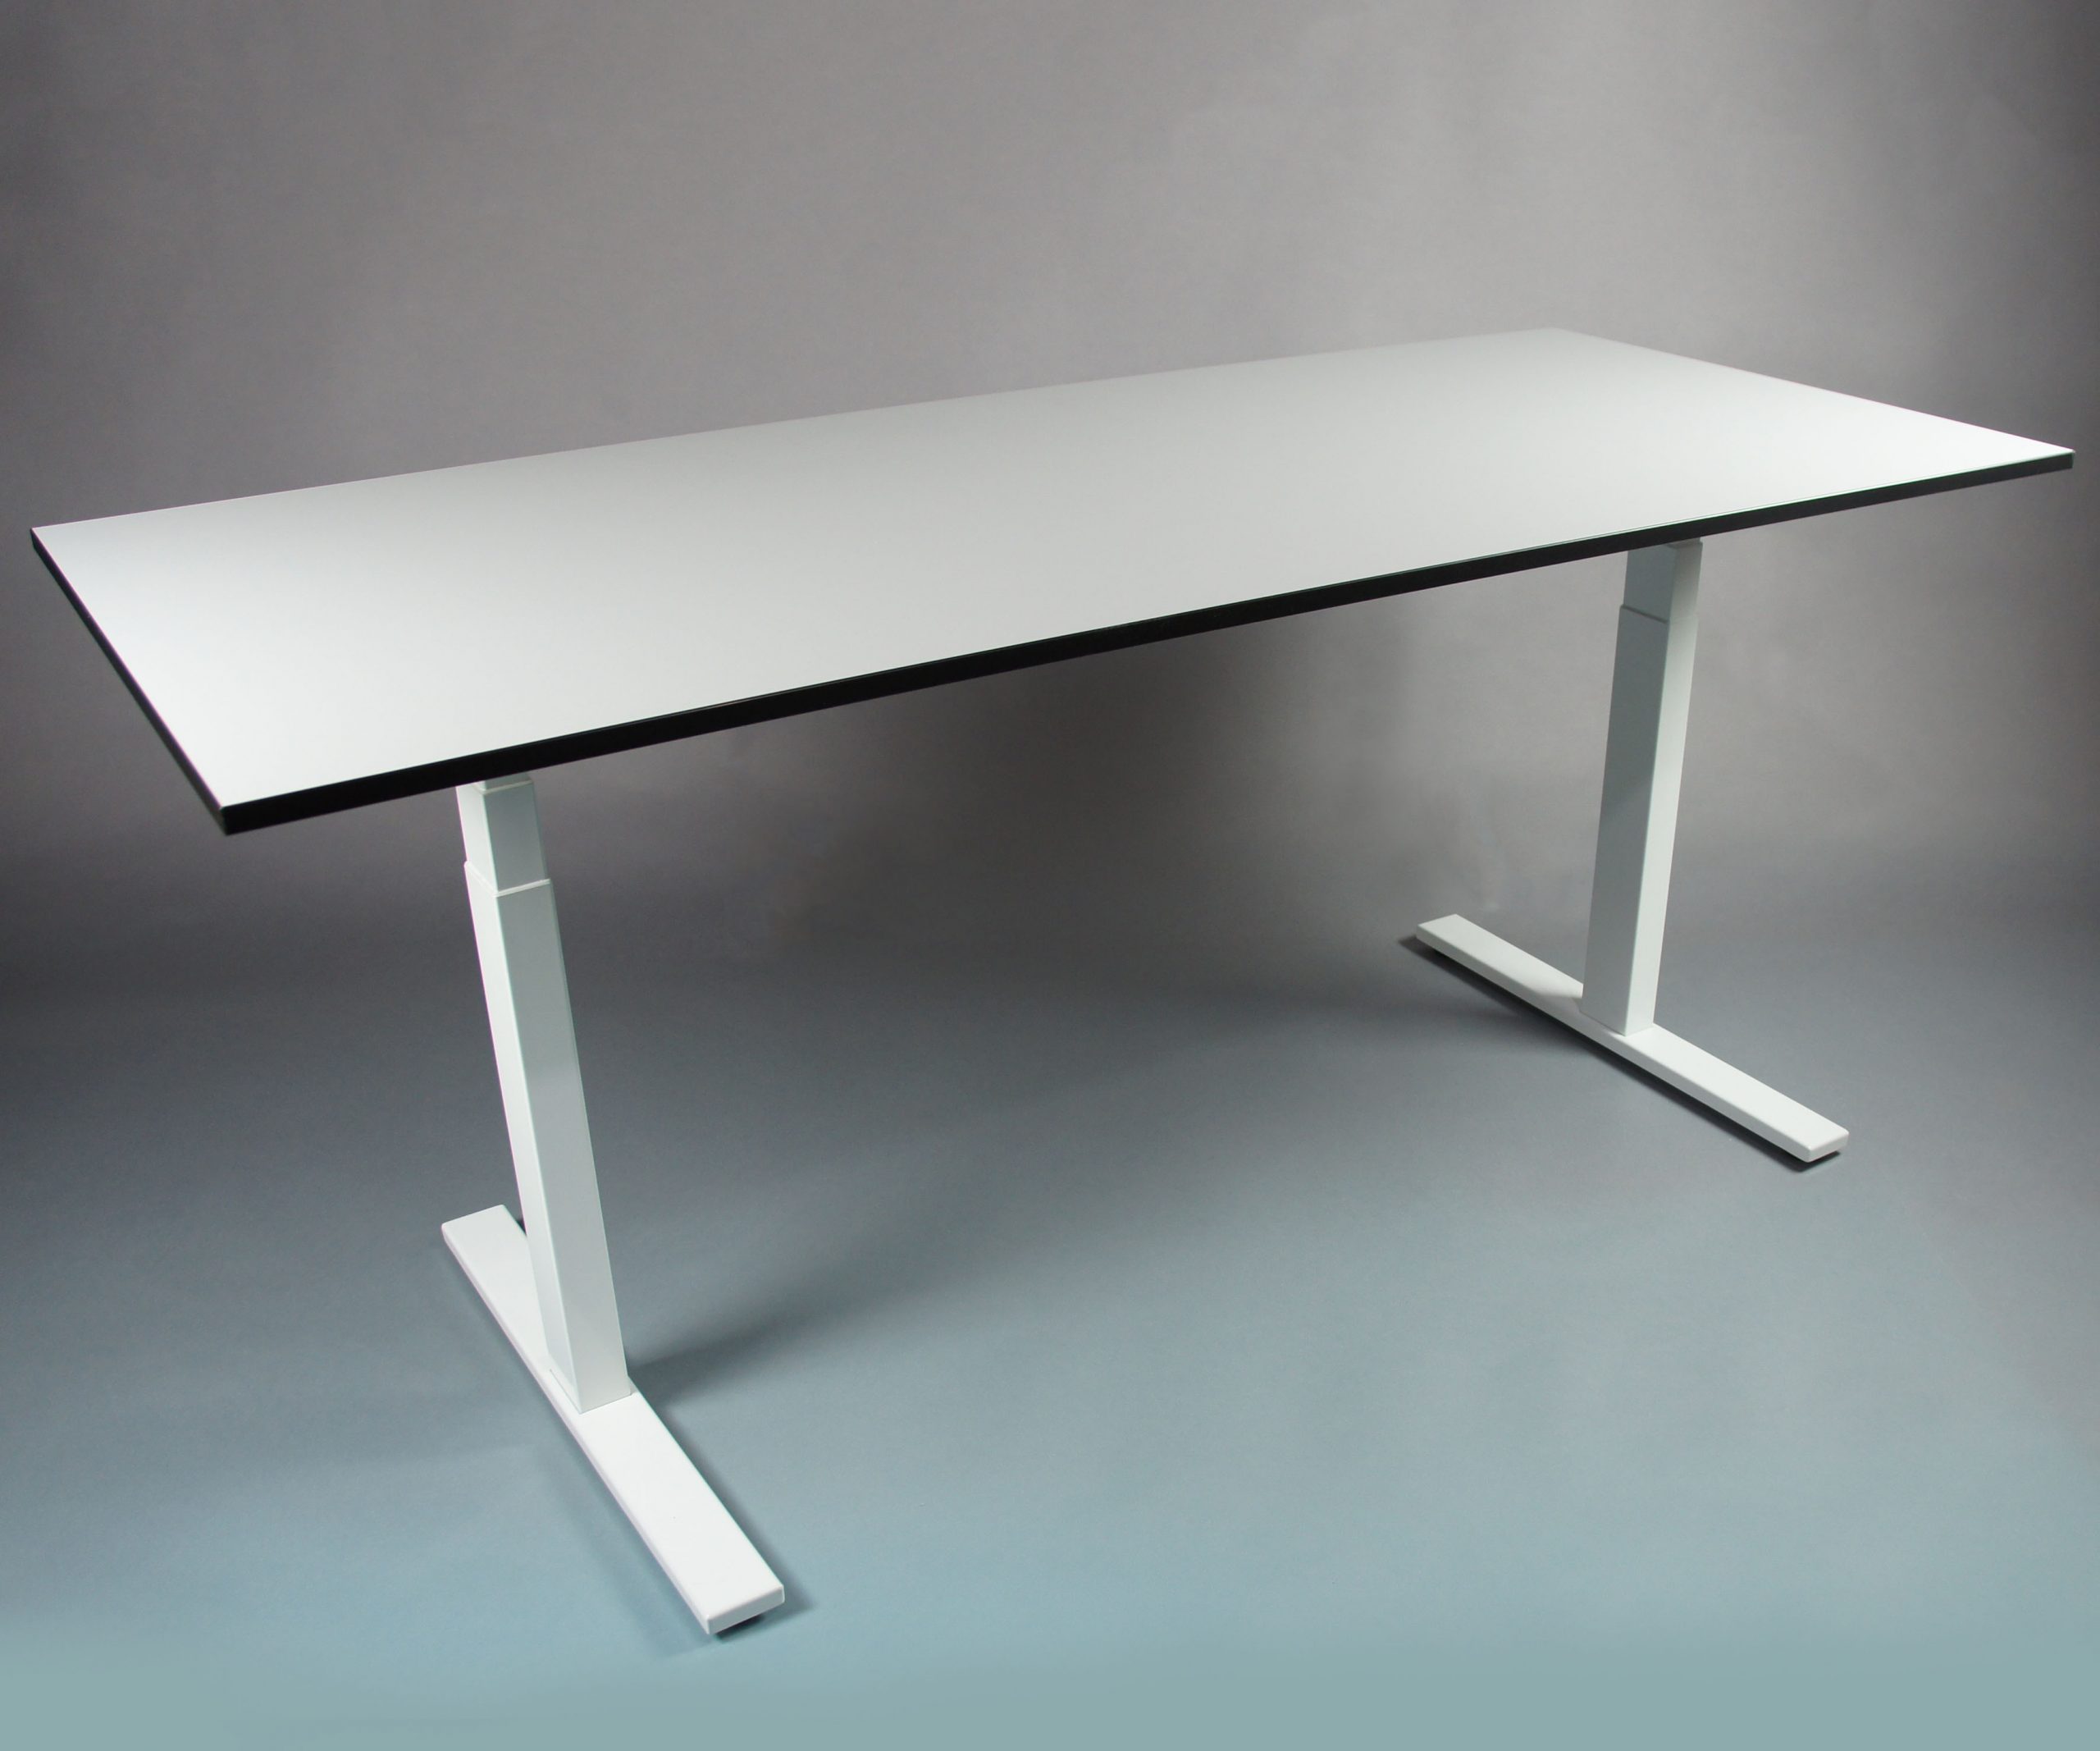 SMART TABLE frame met tafelblad - zit sta bureau - thuiswerktafel